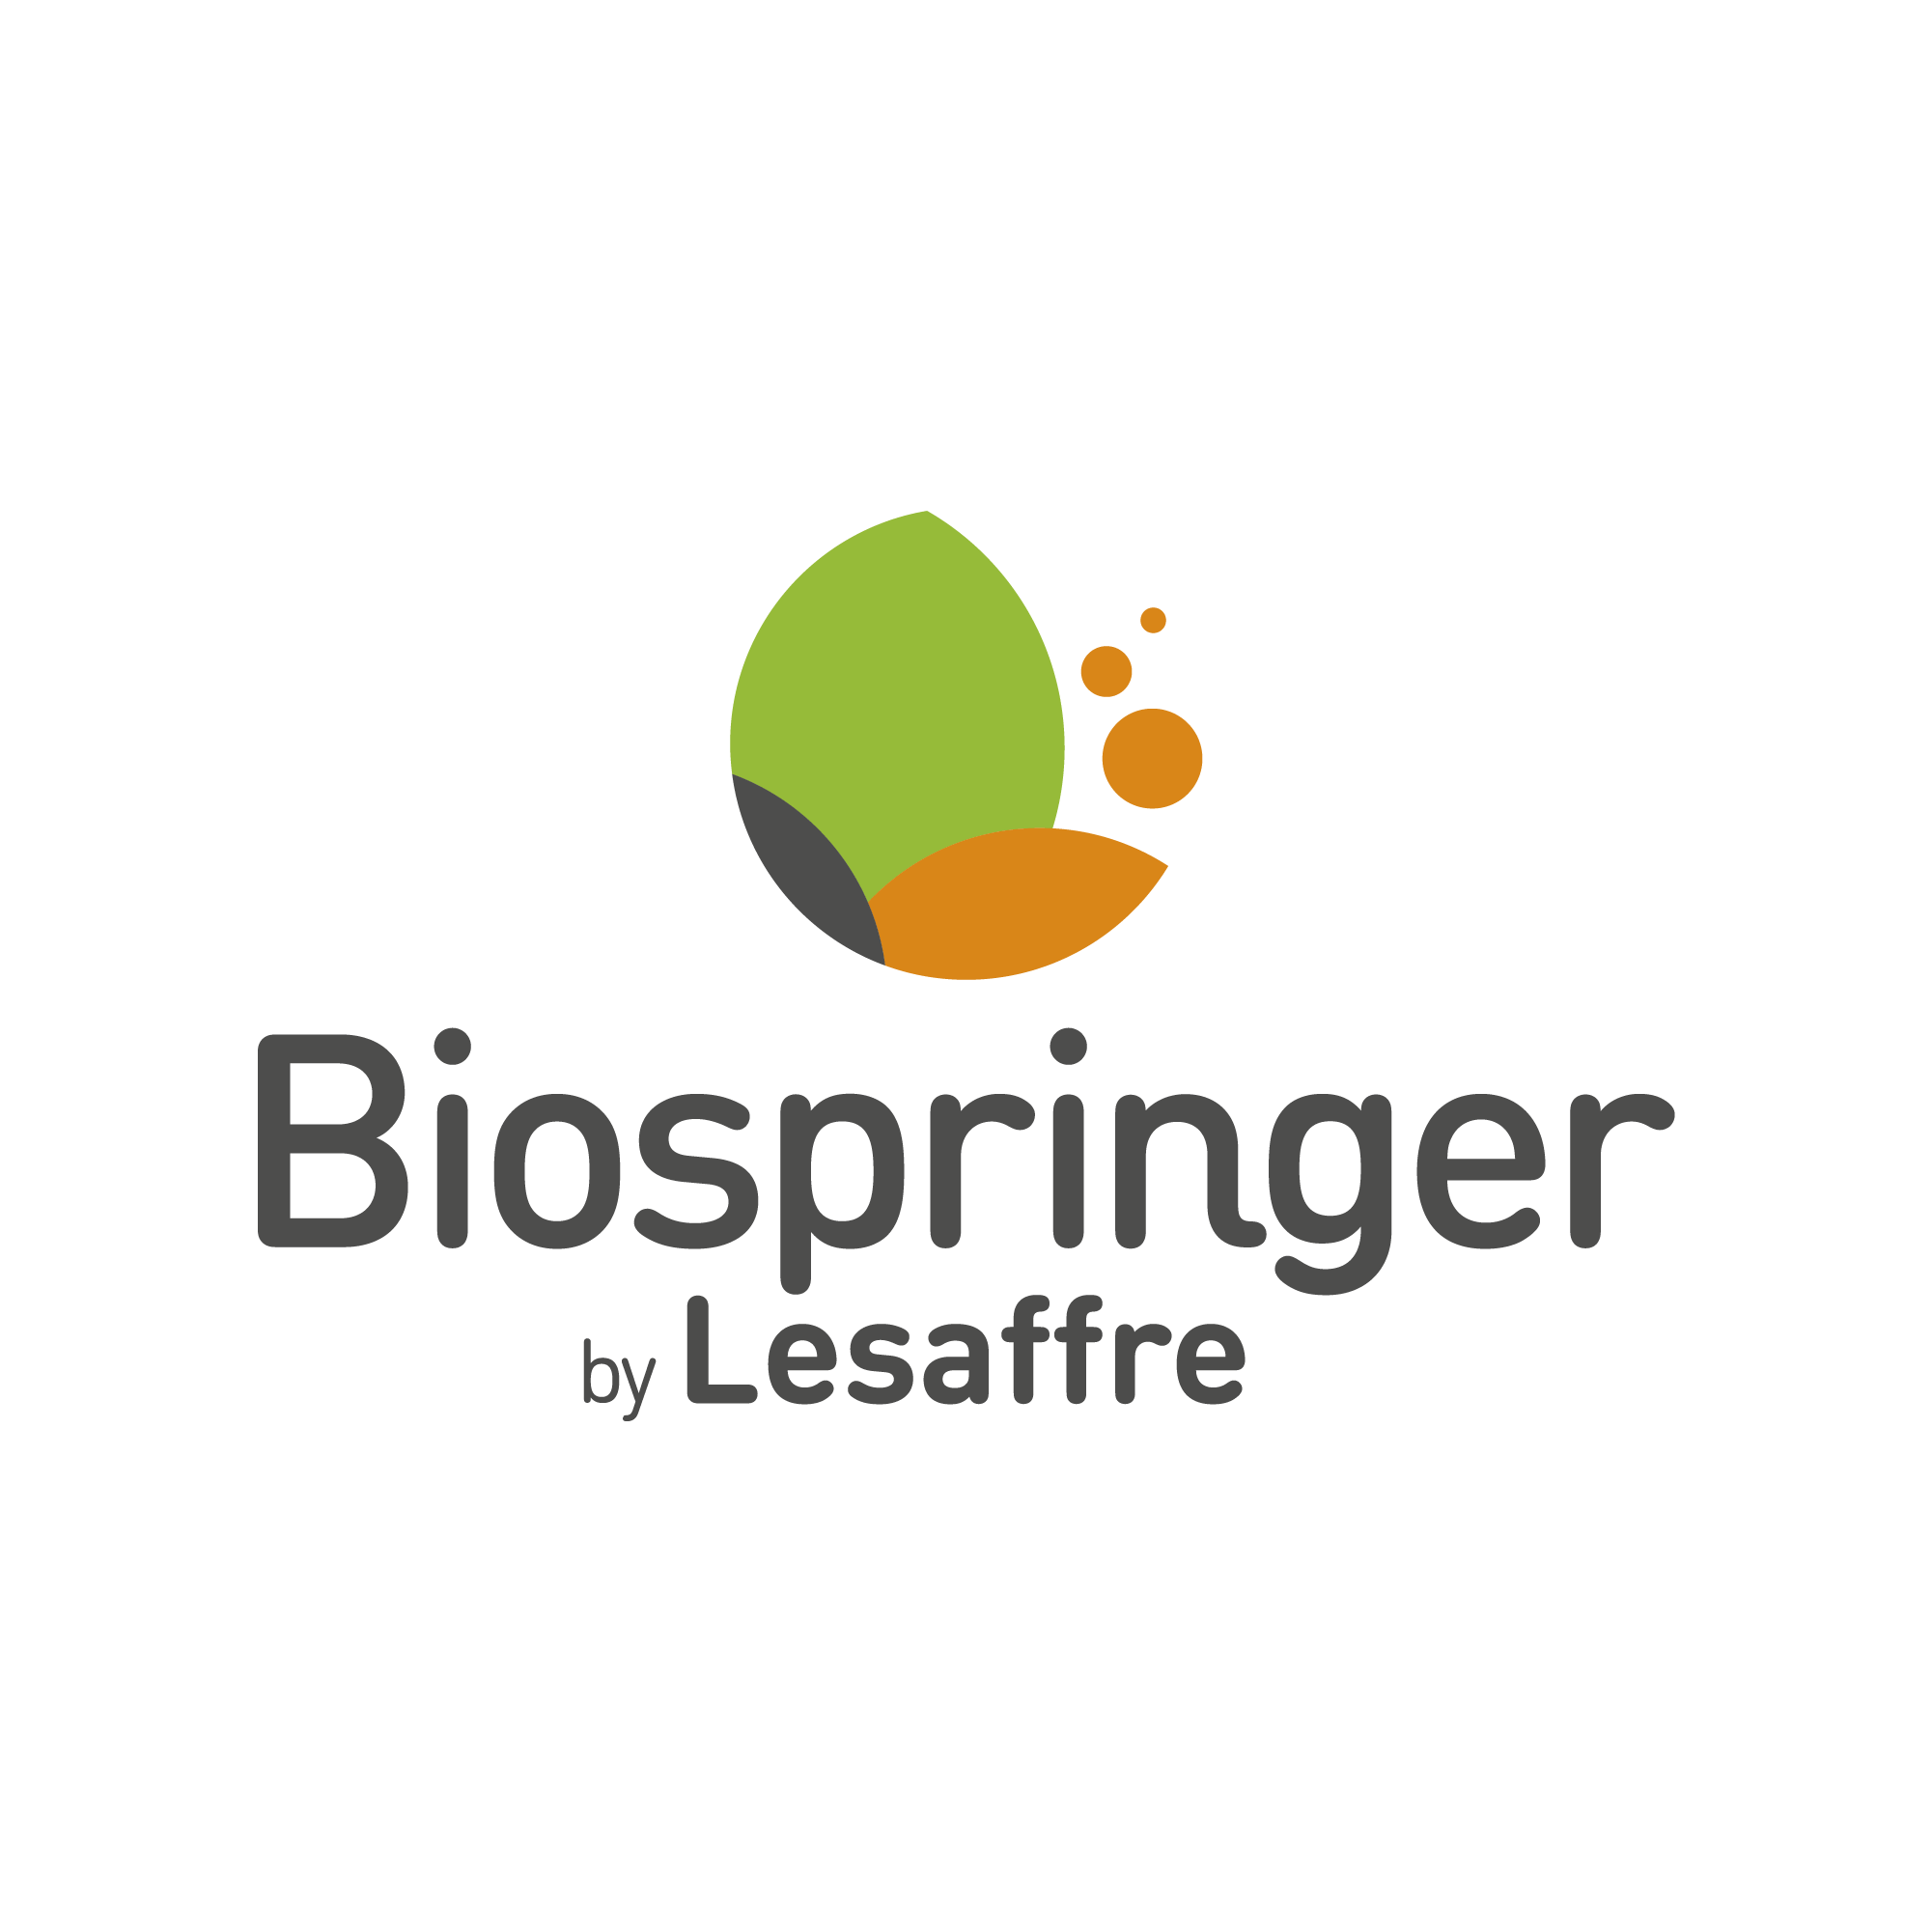 Biospringer by Lesaffre